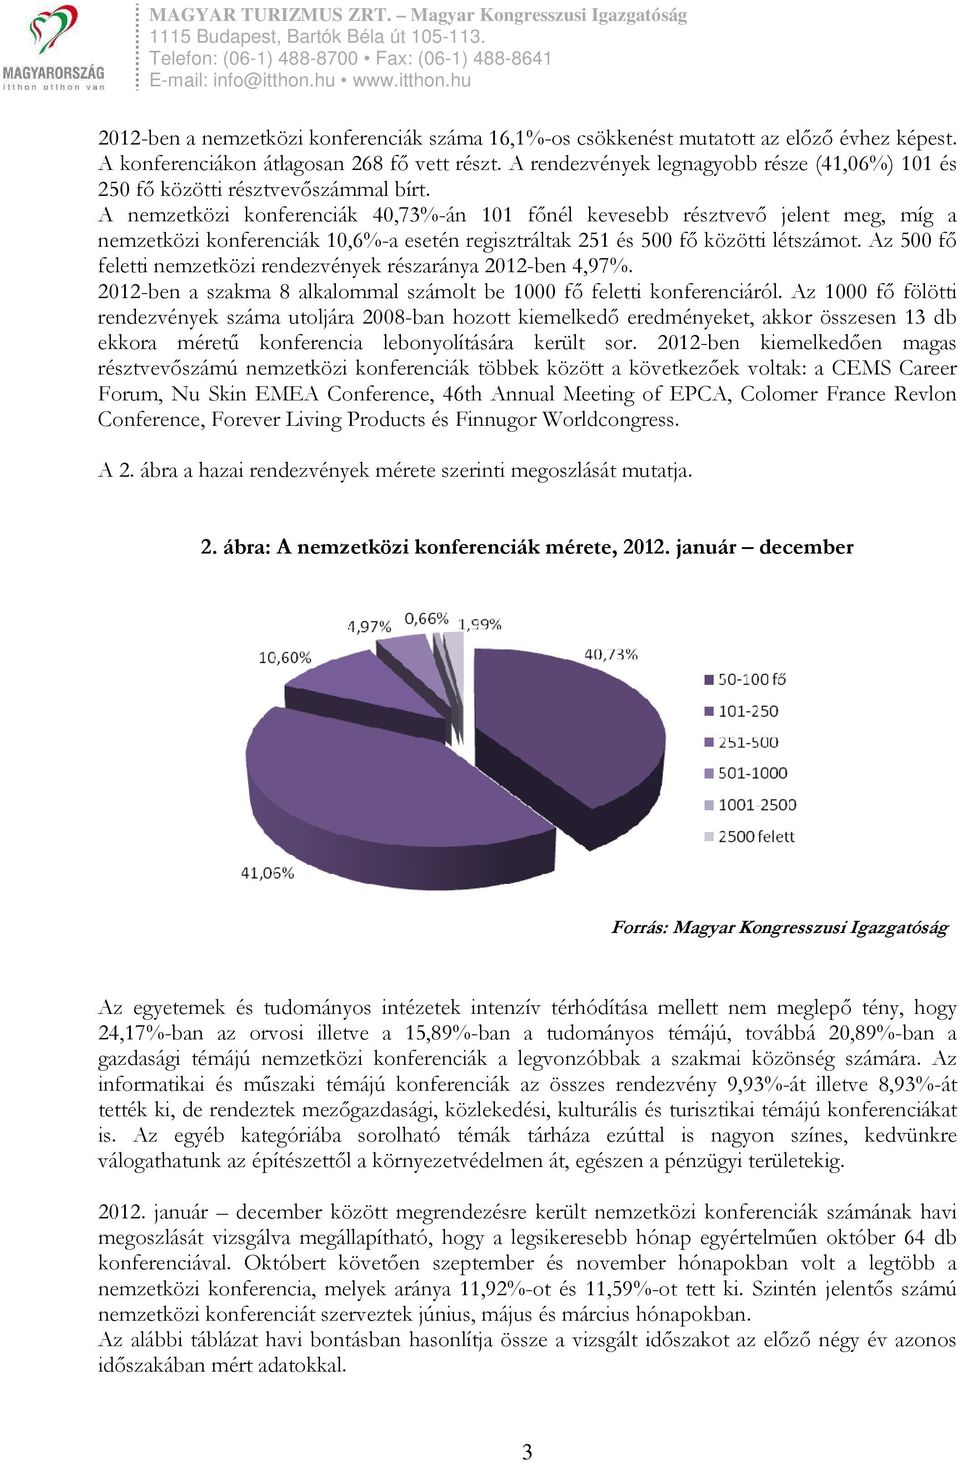 A nemzetközi konferenciák 40,73%-án 101 fınél kevesebb résztvevı jelent meg, míg a nemzetközi konferenciák 10,6%-a esetén regisztráltak 251 és 500 fı közötti létszámot.